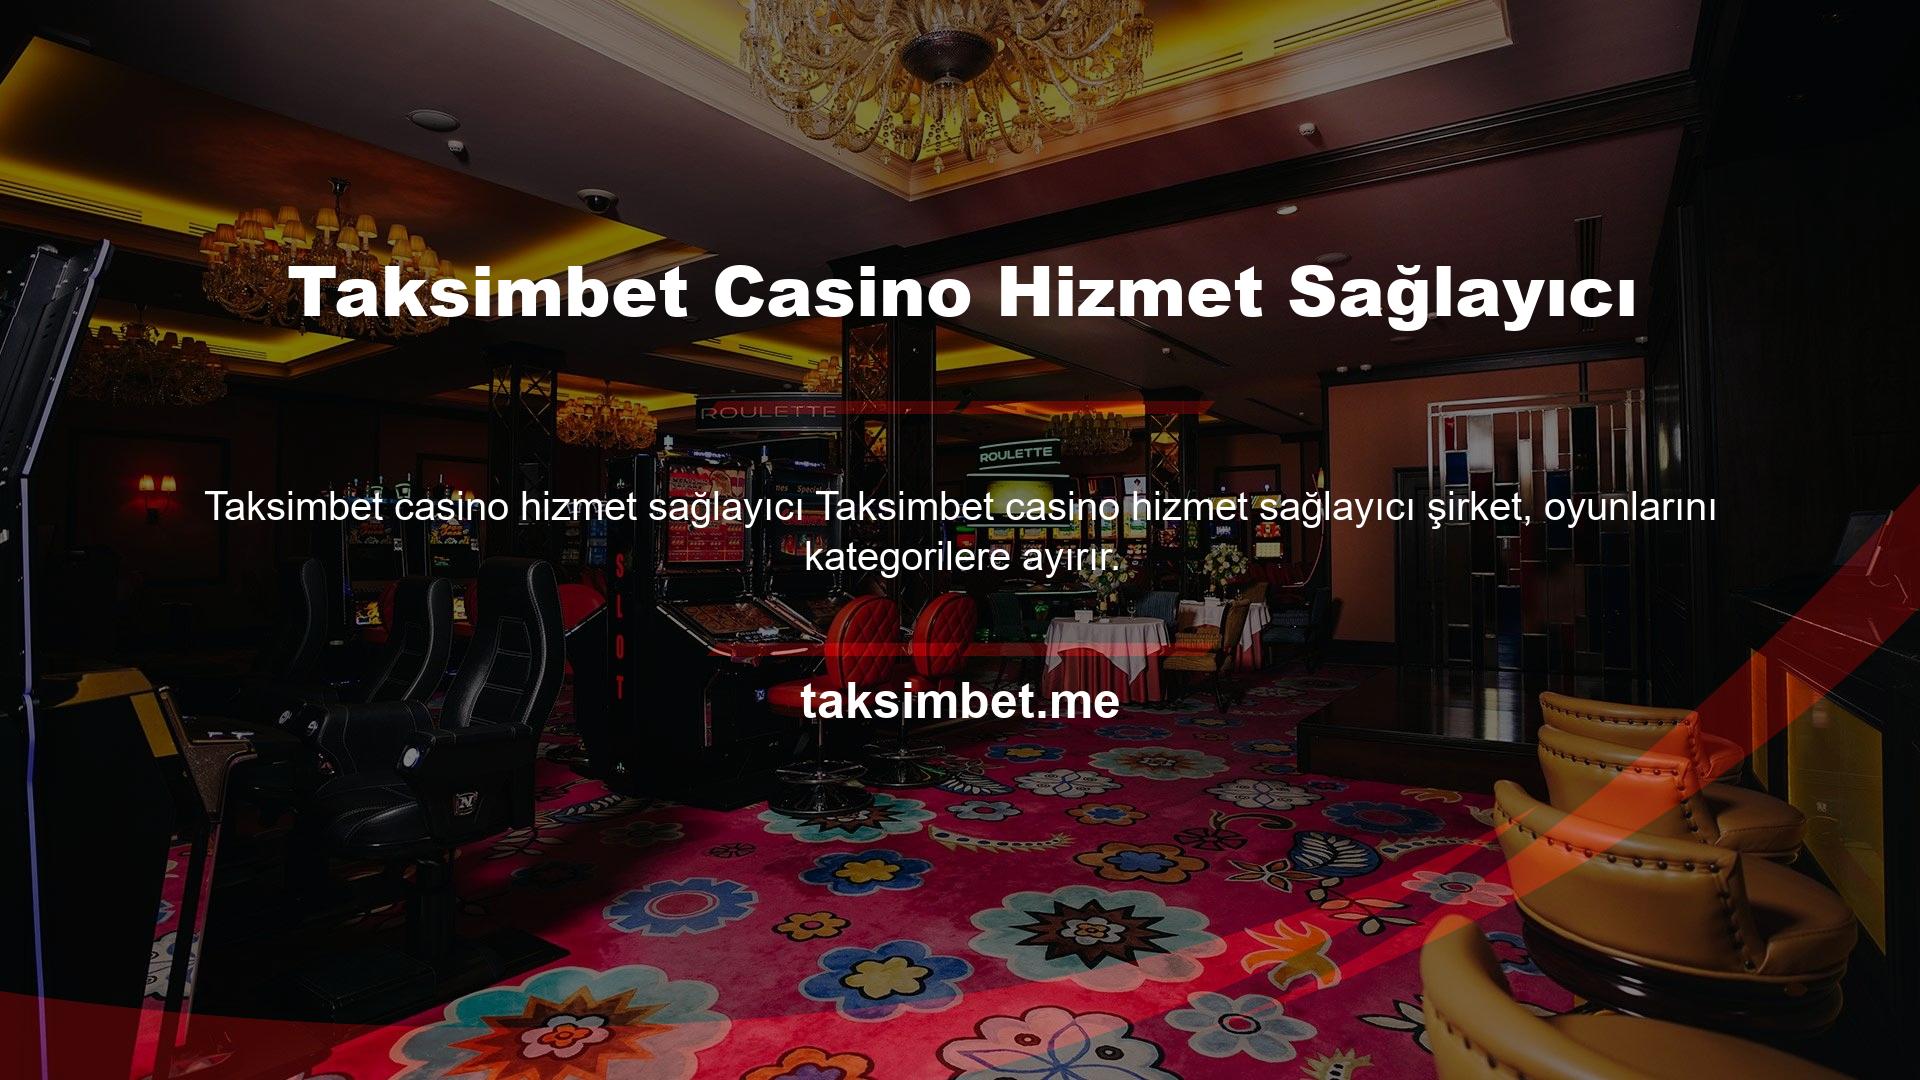 Rulet oynamak istiyorsanız öncelikle hesabınıza Taksimbet casino hizmet sağlayıcı giriş yapmalı ve üst menü alanından Canlı Casino kategorisini seçmelisiniz